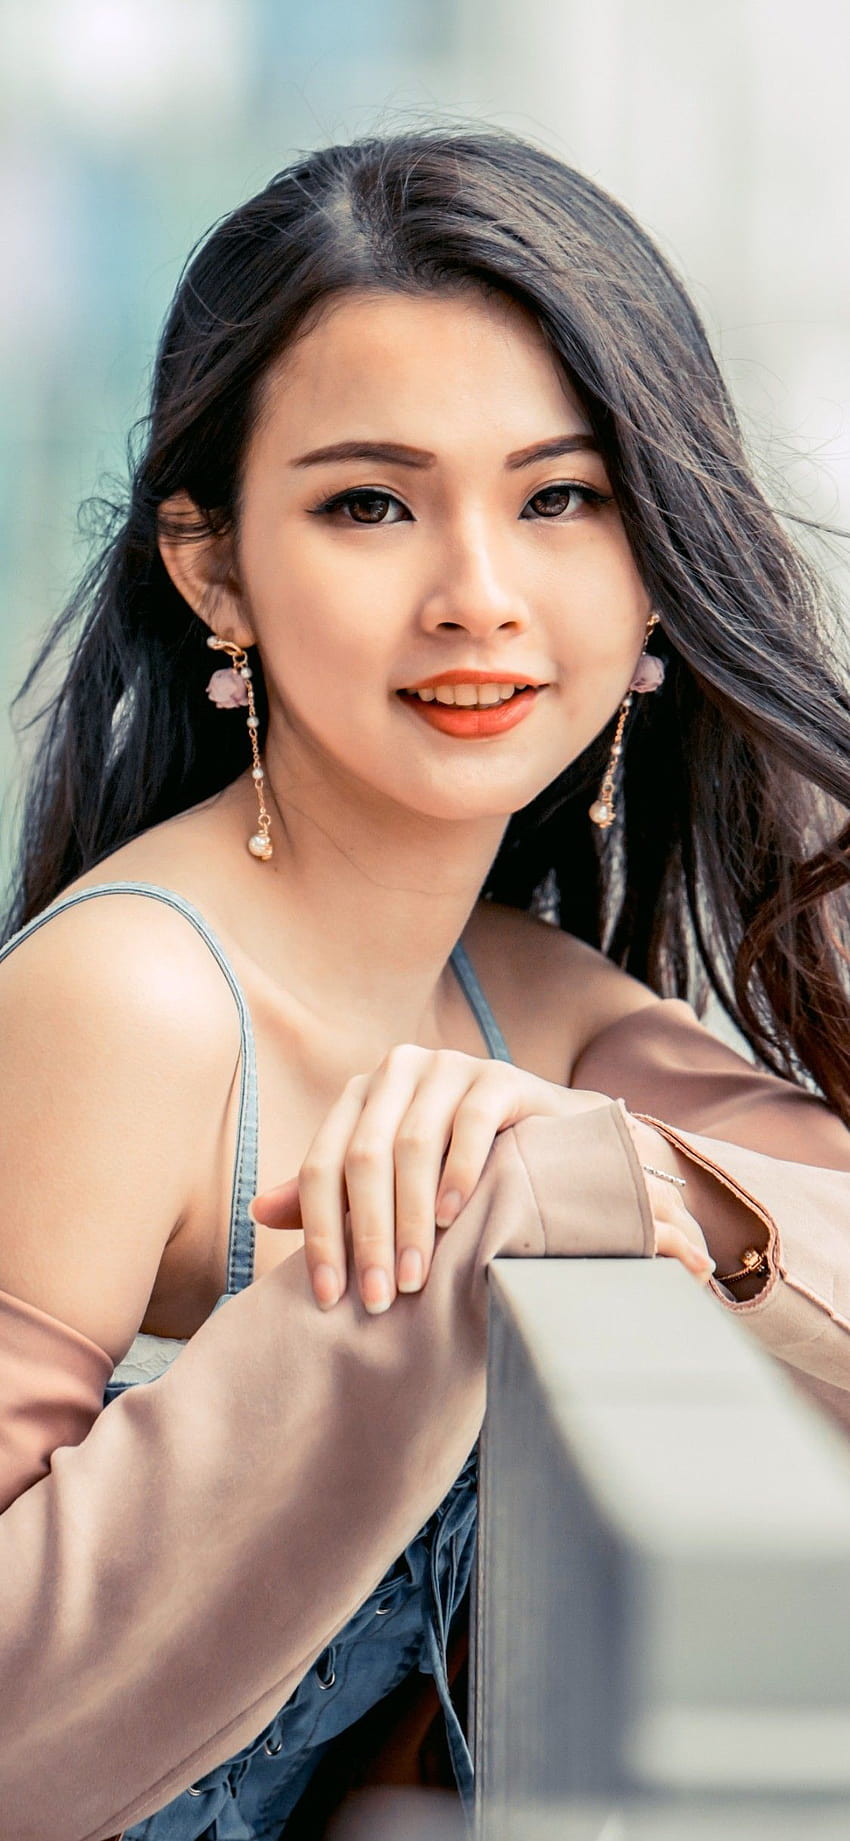 Gadis Asia , Gadis cantik, Wanita Asia, Lucu, Orang-orang, wanita cantik Asia wallpaper ponsel HD